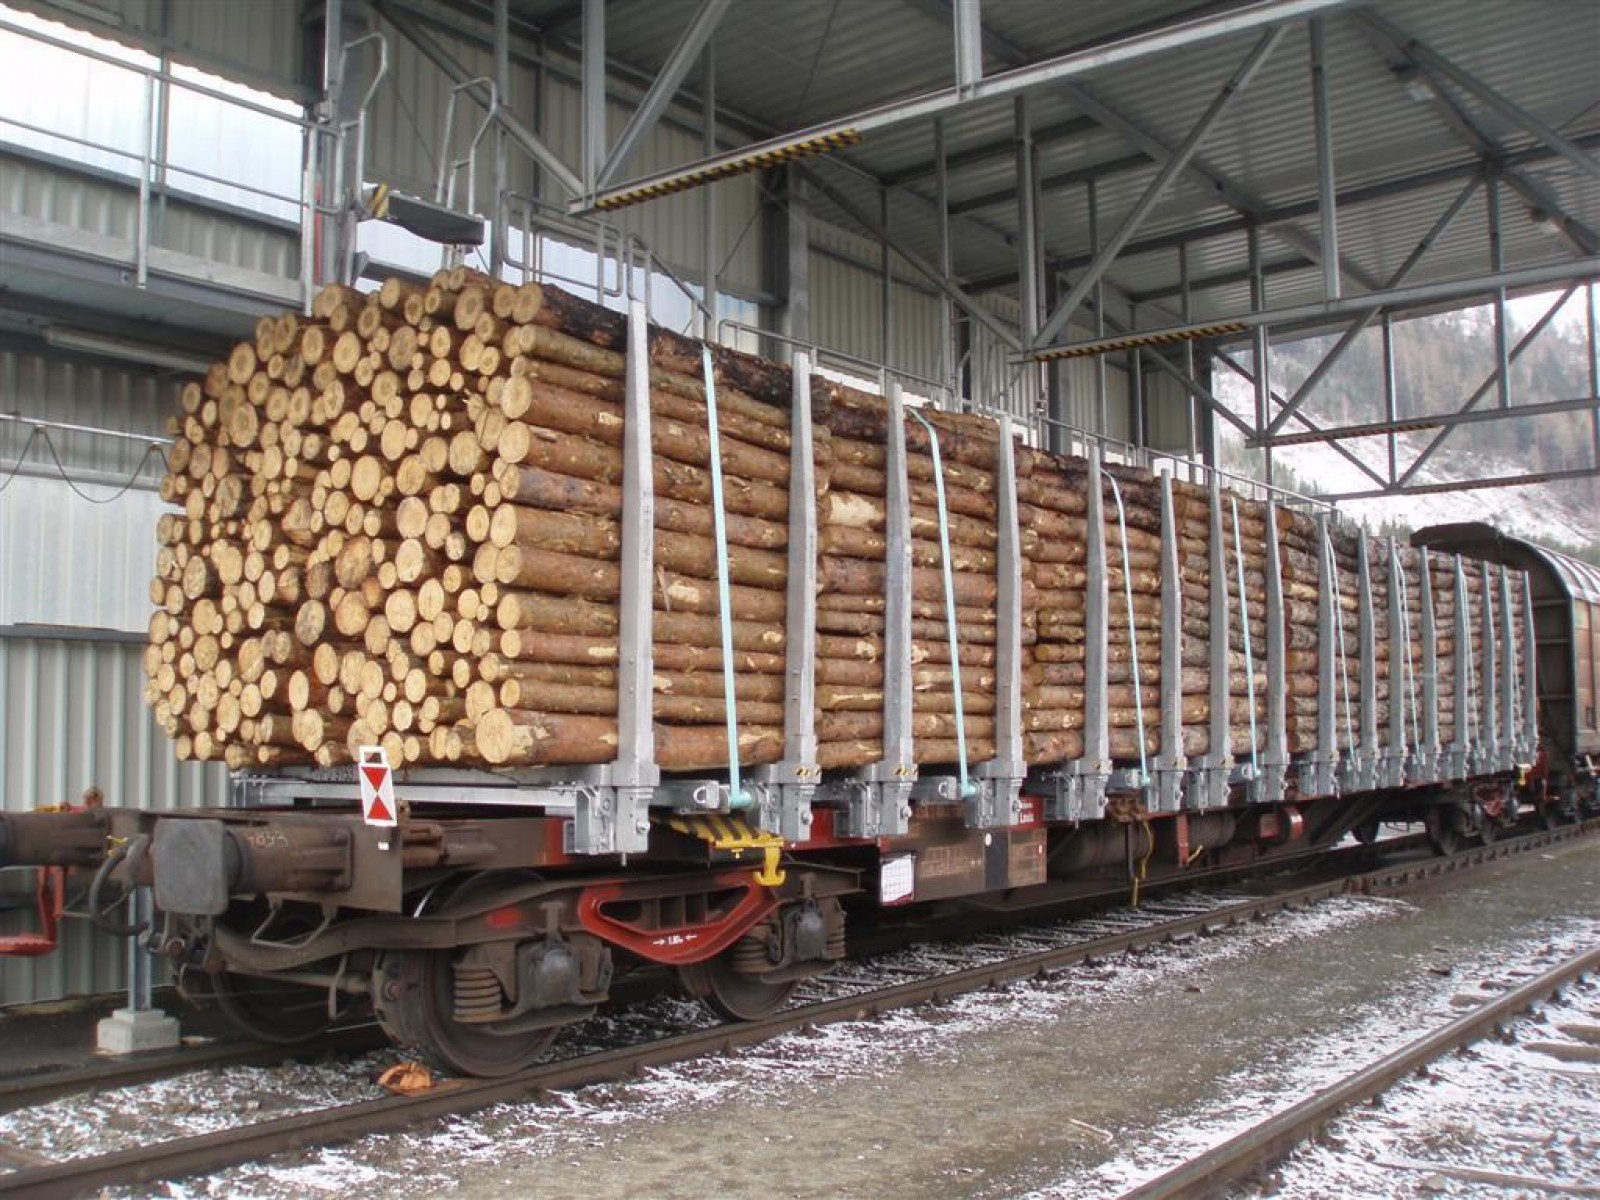 Megduplázza szociális tűzifa fuvarozási kapacitását a Rail Cargo Hungaria